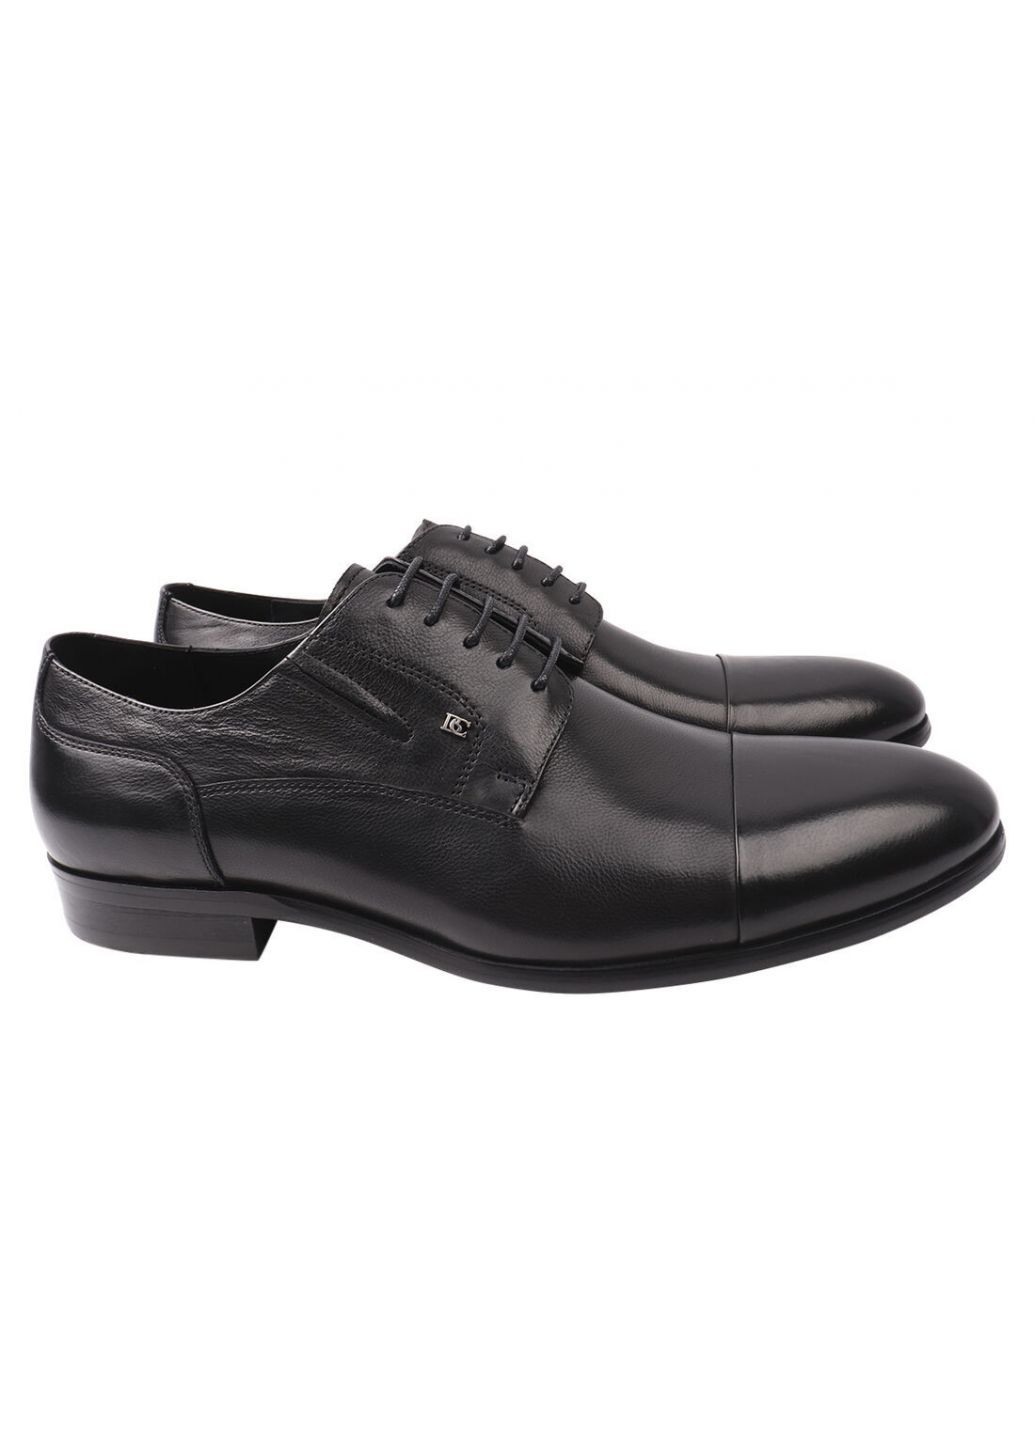 Черные туфли мужские из натуральной кожи, на низком ходу, на шнуровке, цвет черный, Basconi